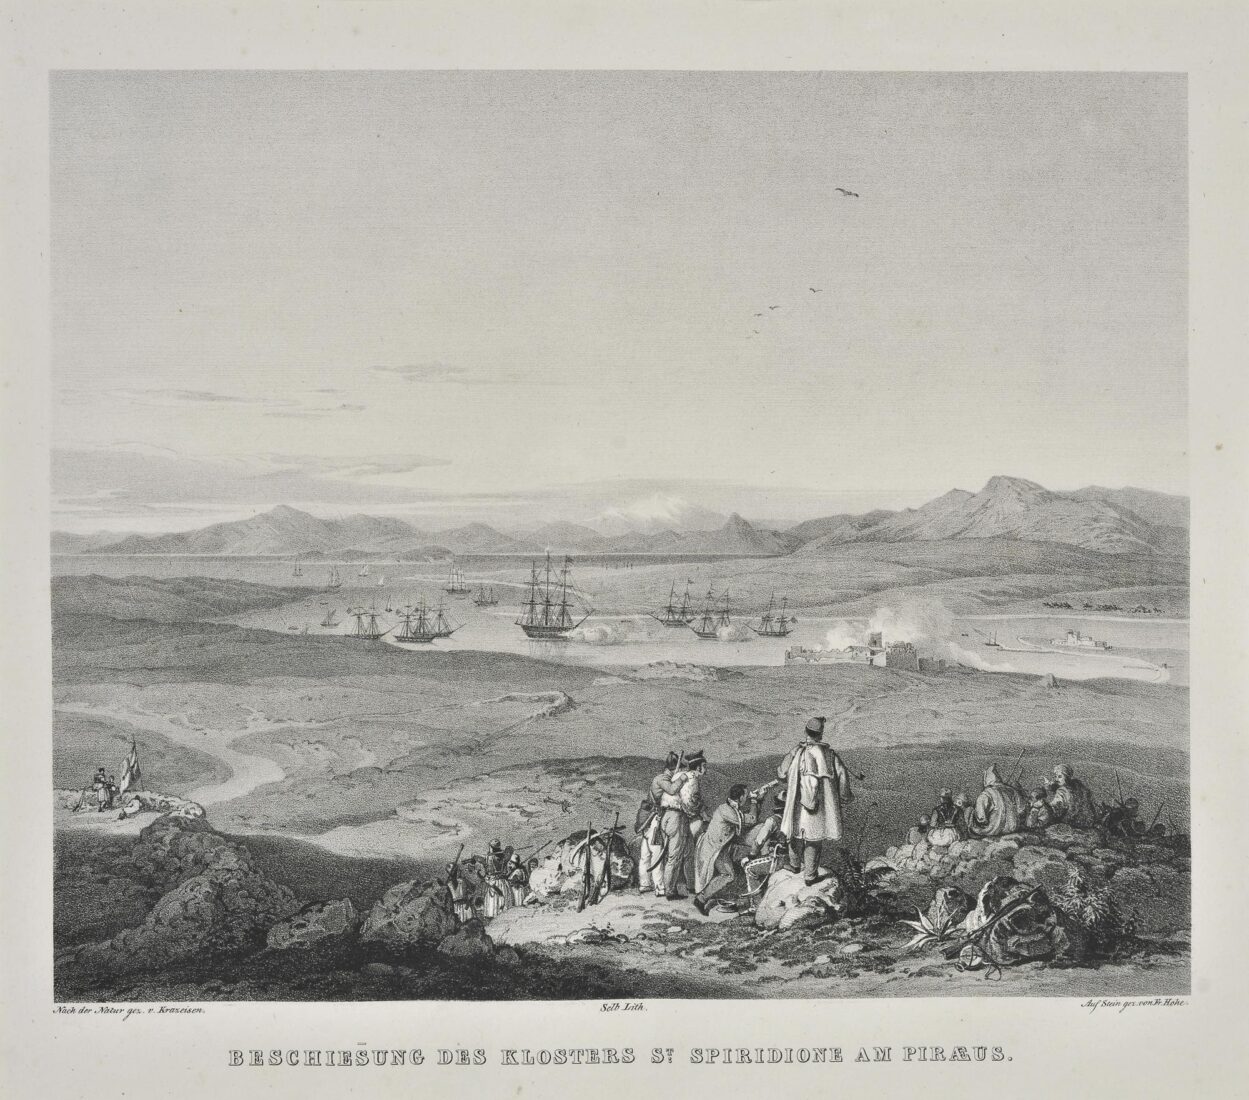 Βομβαρδισμός της μονής του Αγίου Σπυρίδωνα στον Πειραιά - Krazeisen Karl